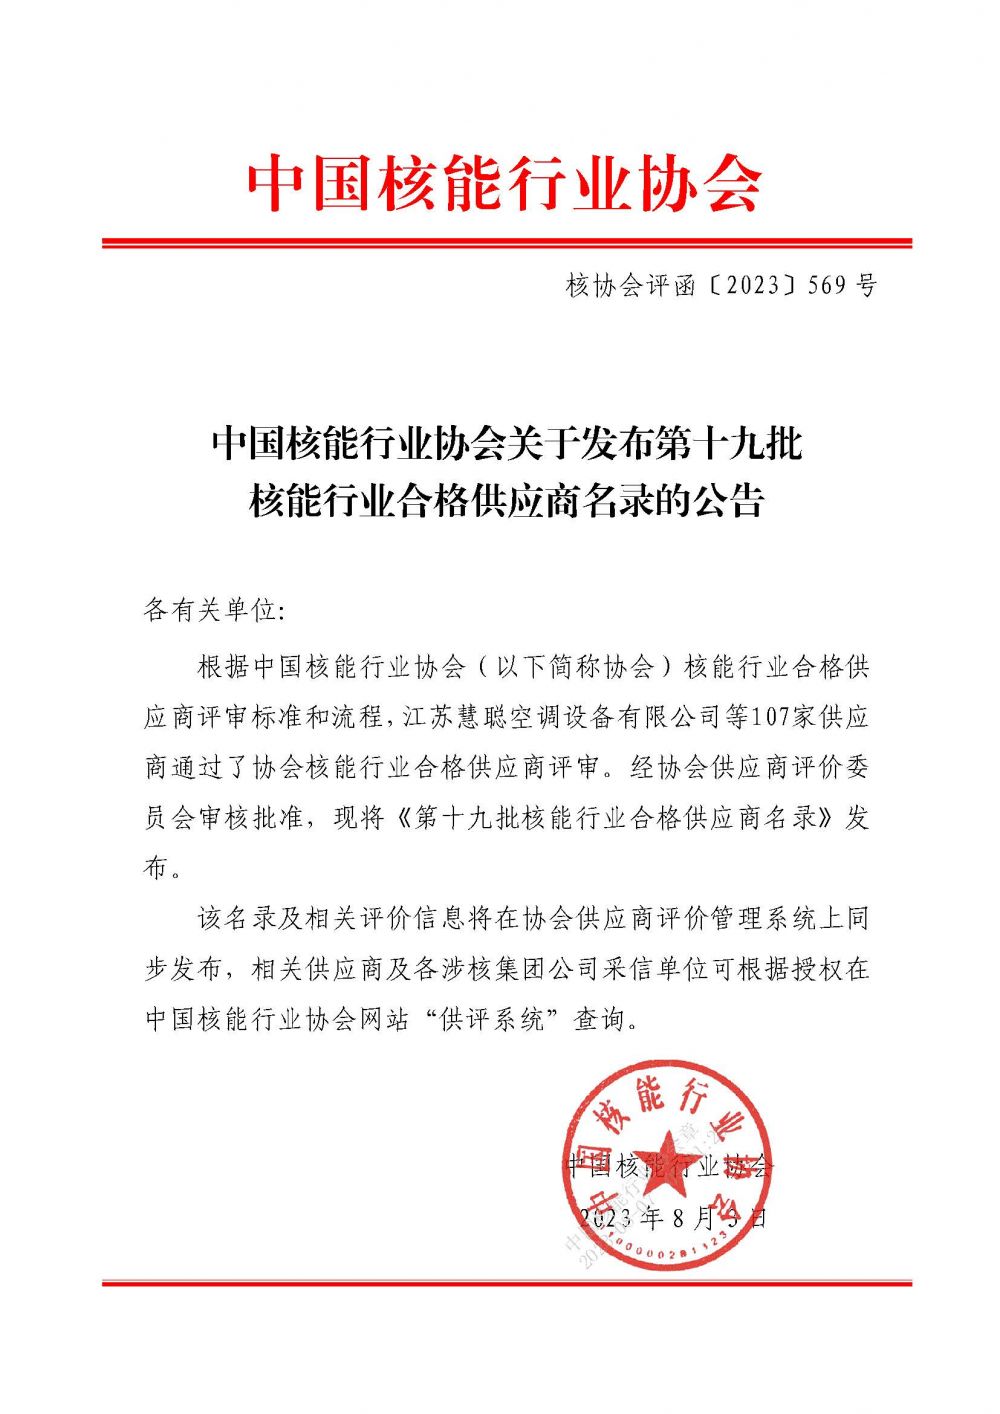 中国核能行业协会关于发布第十九批核能行业合格供应商名录的公告_页面_1.jpg